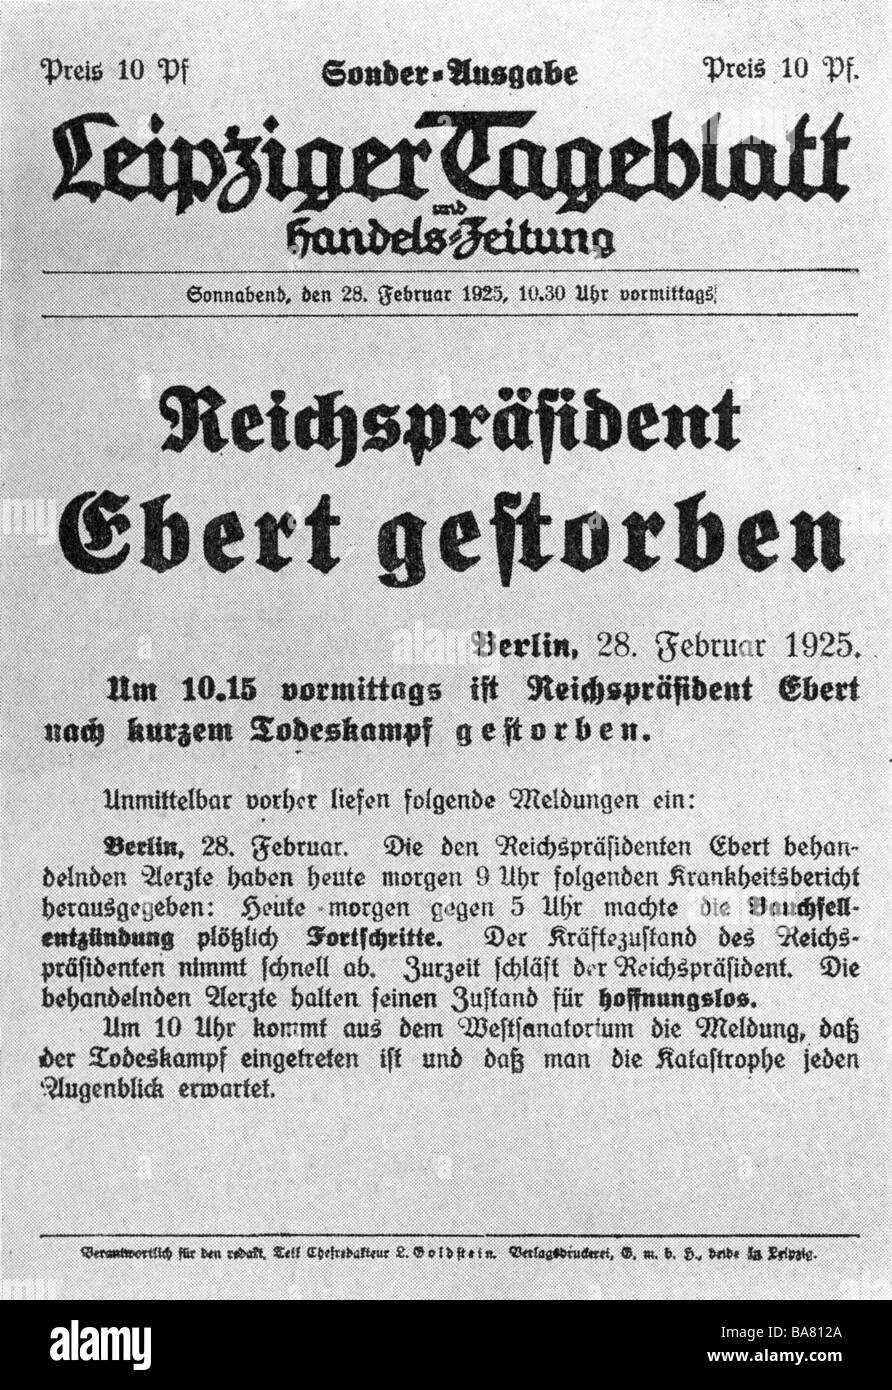 Ebert, Friedrich, 4.2.1871 - 28.2.1925, politicien allemand (SPD), Président de l'Allemagne 11.2.1919 - 28.2.1925, mort, édition spéciale de 'Leipziger Tageblatt', 28.2.1925, Banque D'Images